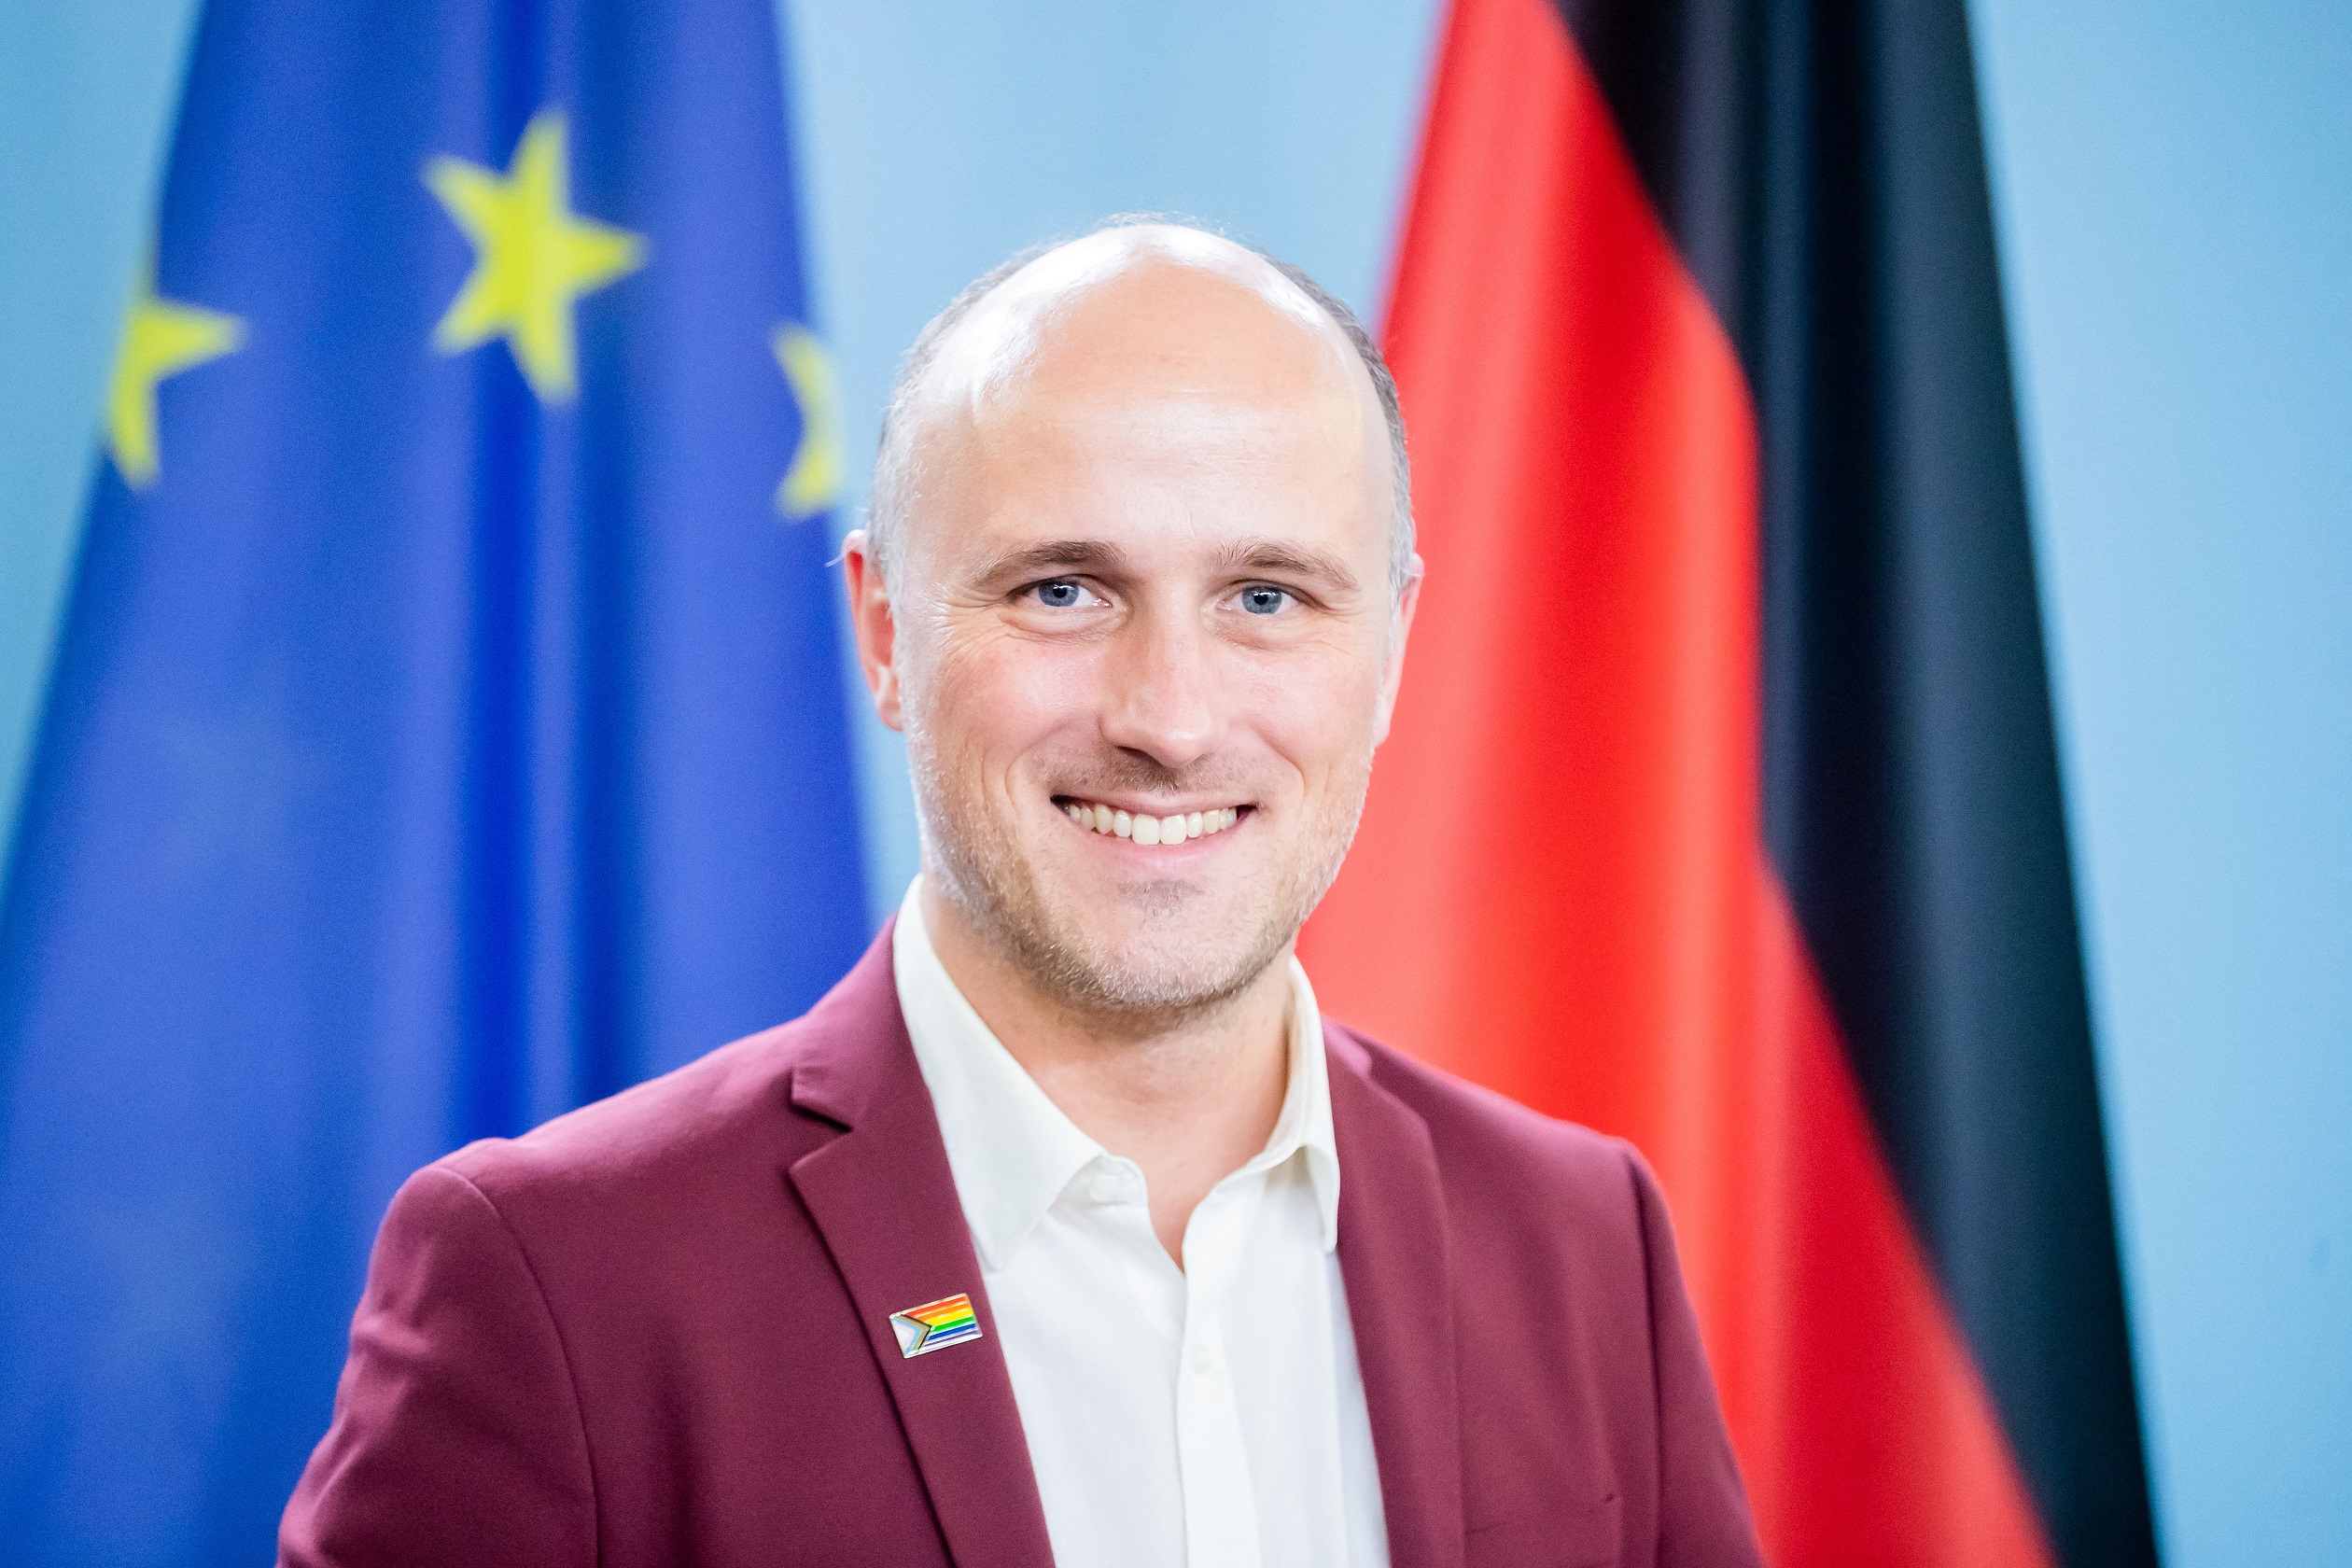 Queerügyi kormánybiztost nevezett ki az új német kormány